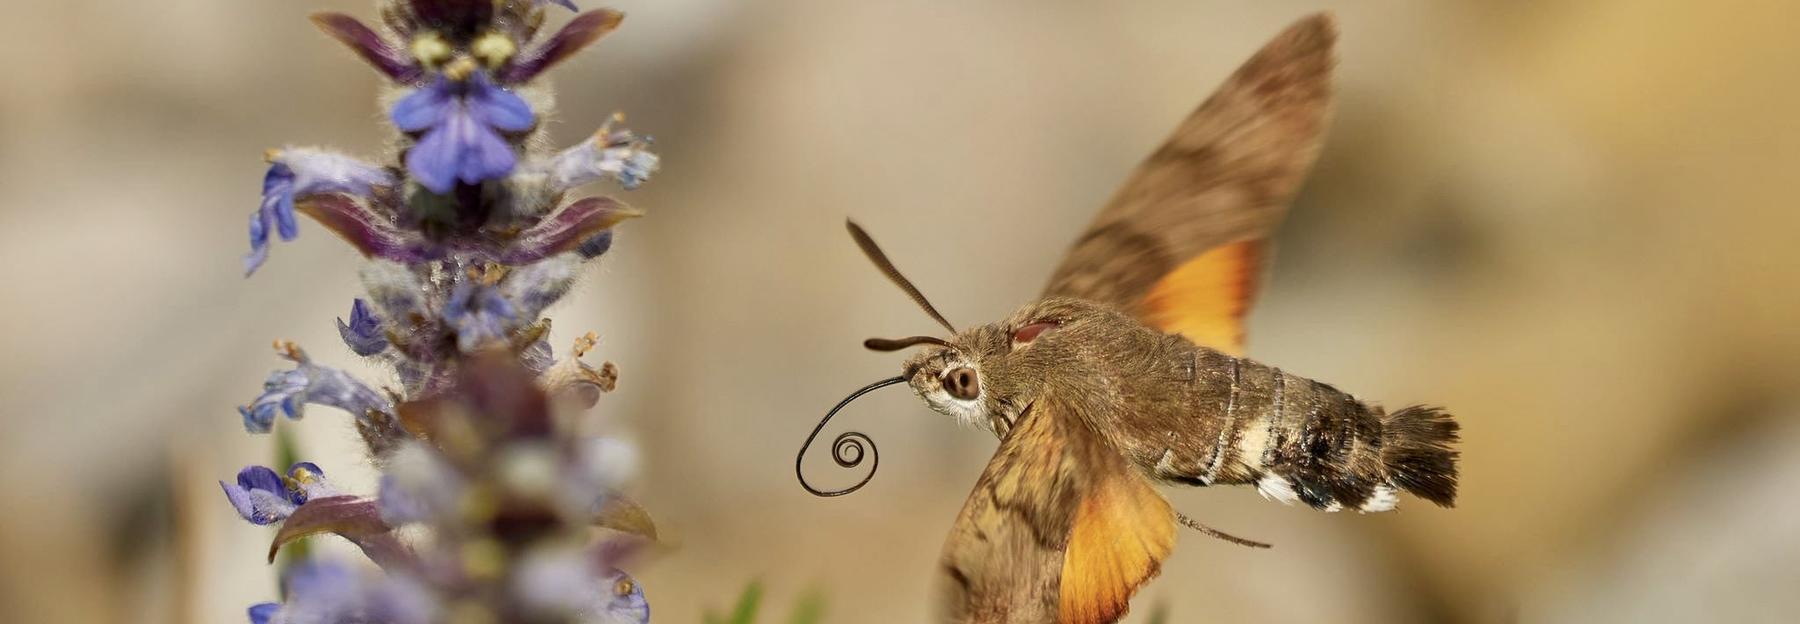 Most liked Schmetterlingsfoto in der App, Taubenschwänzchen